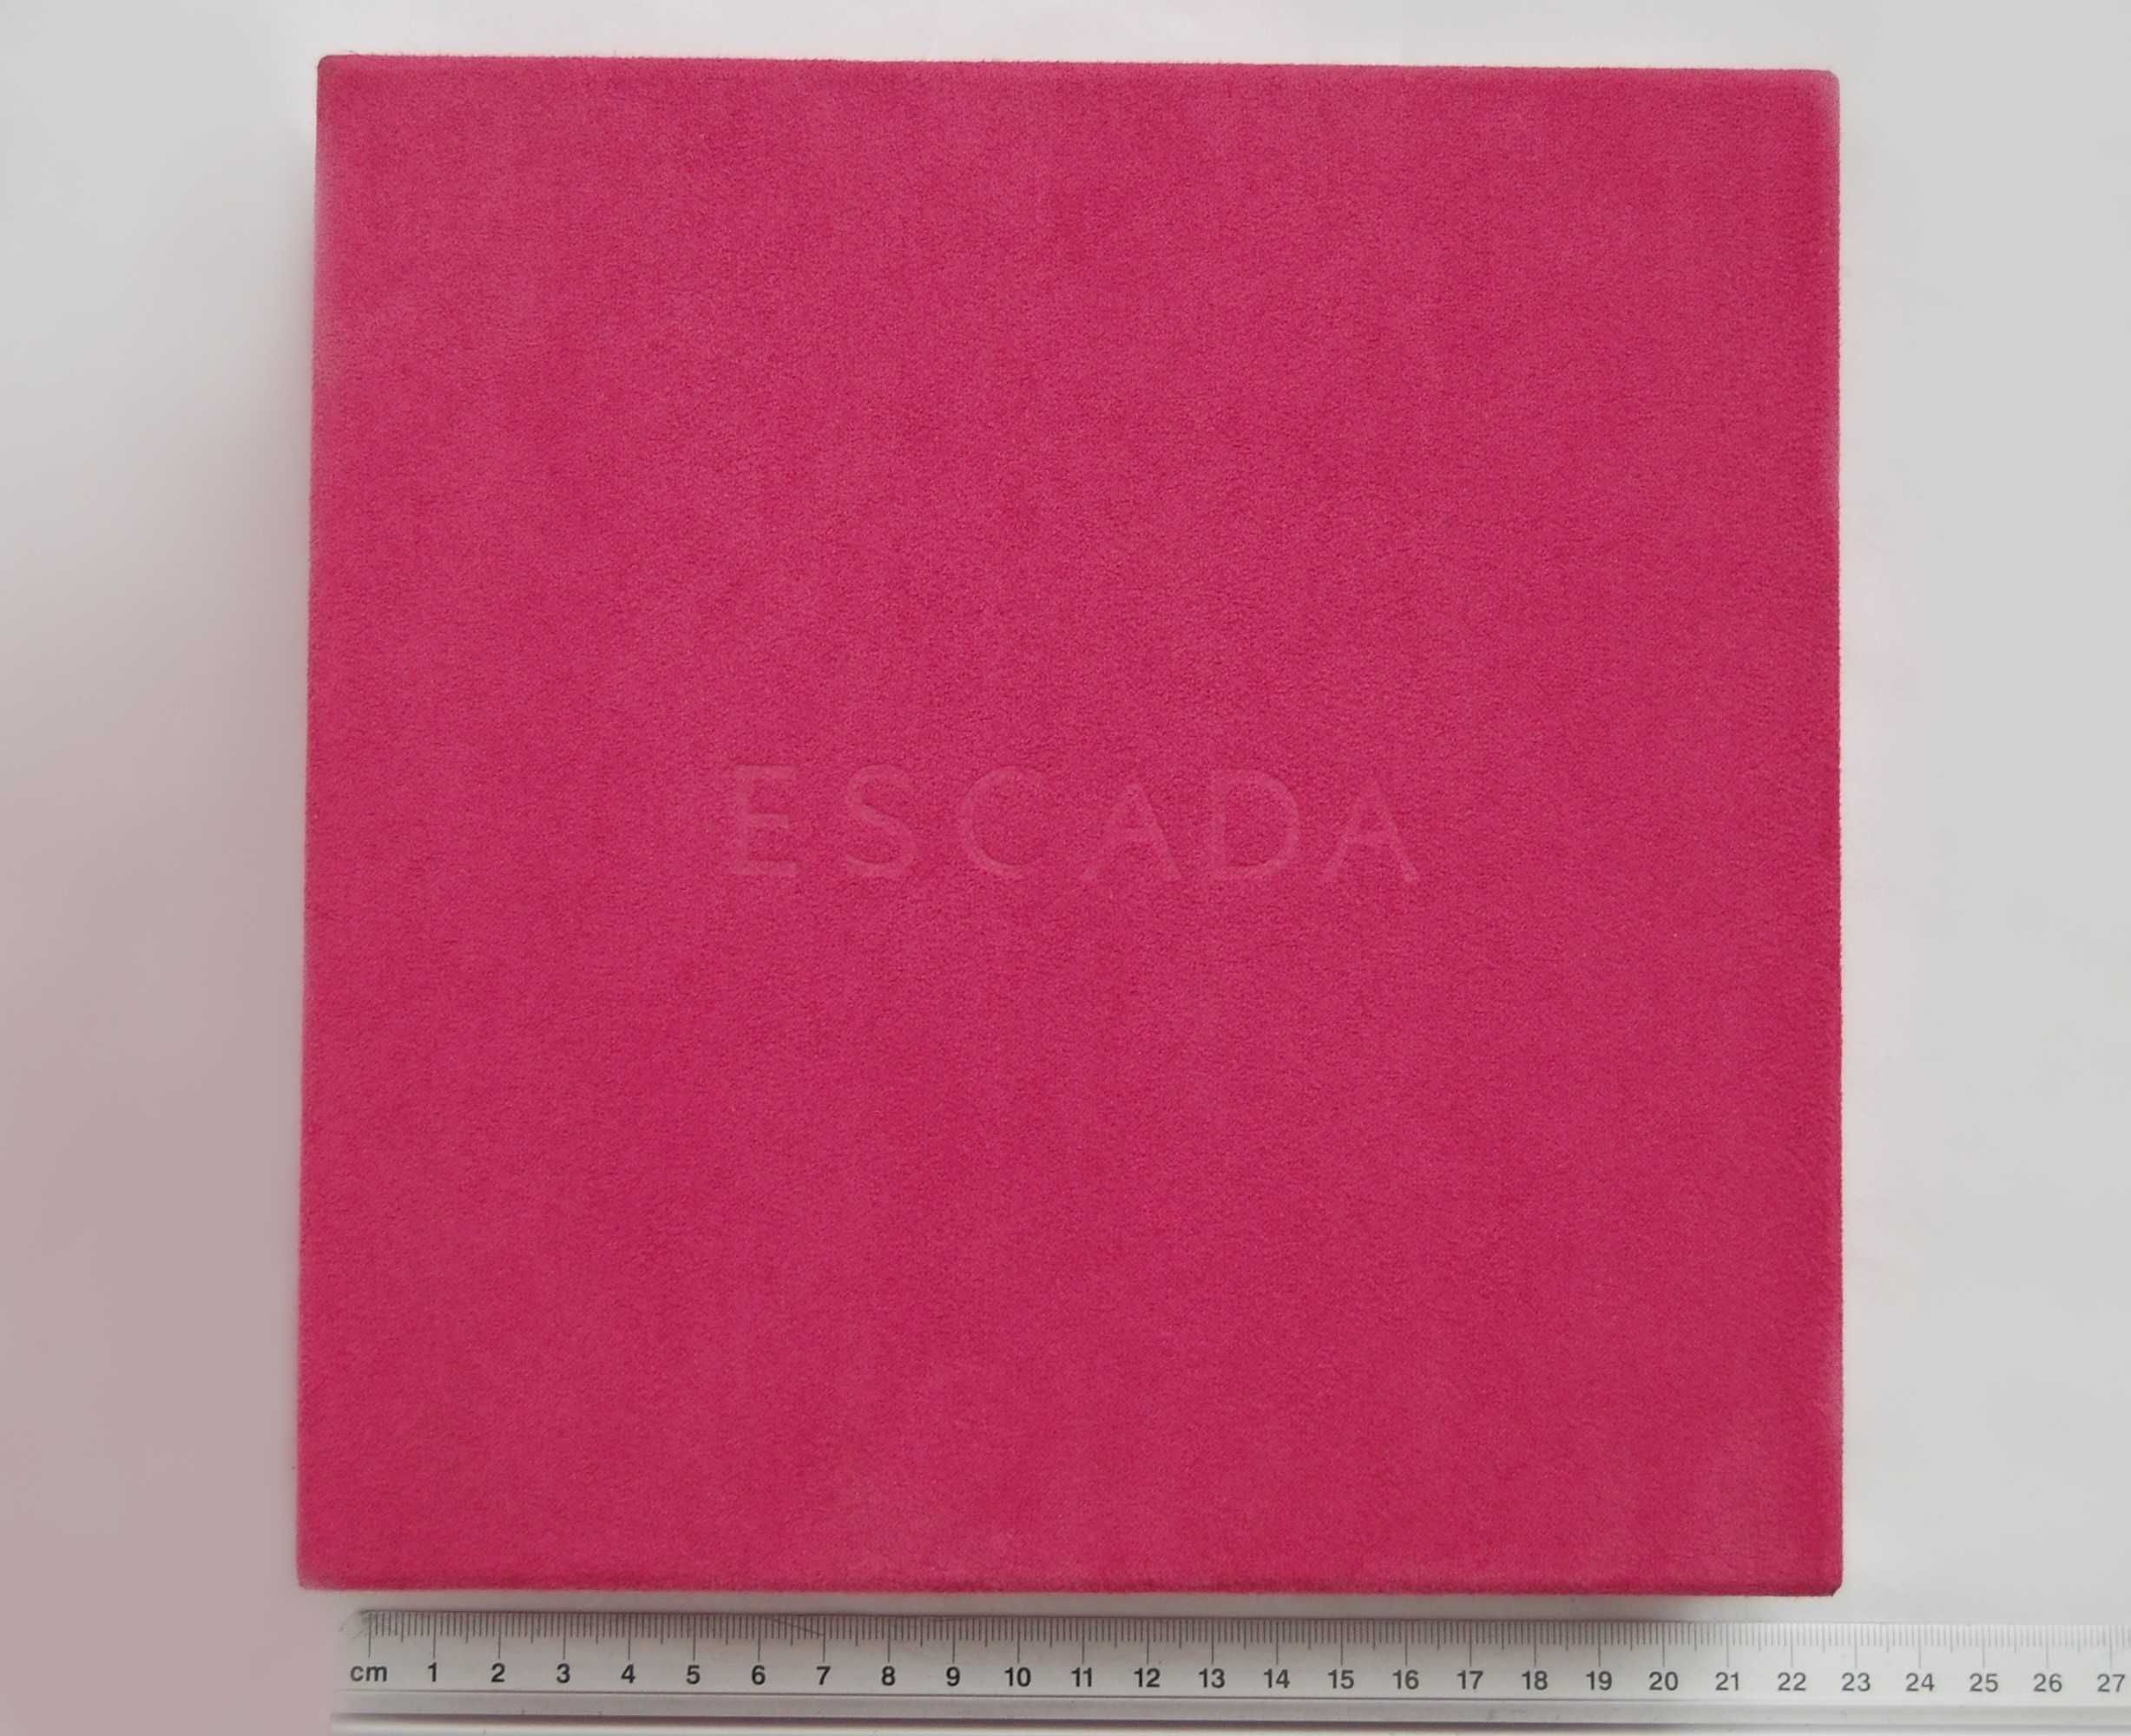 Pudełko na perfumy Escada, różowy welur, vintage